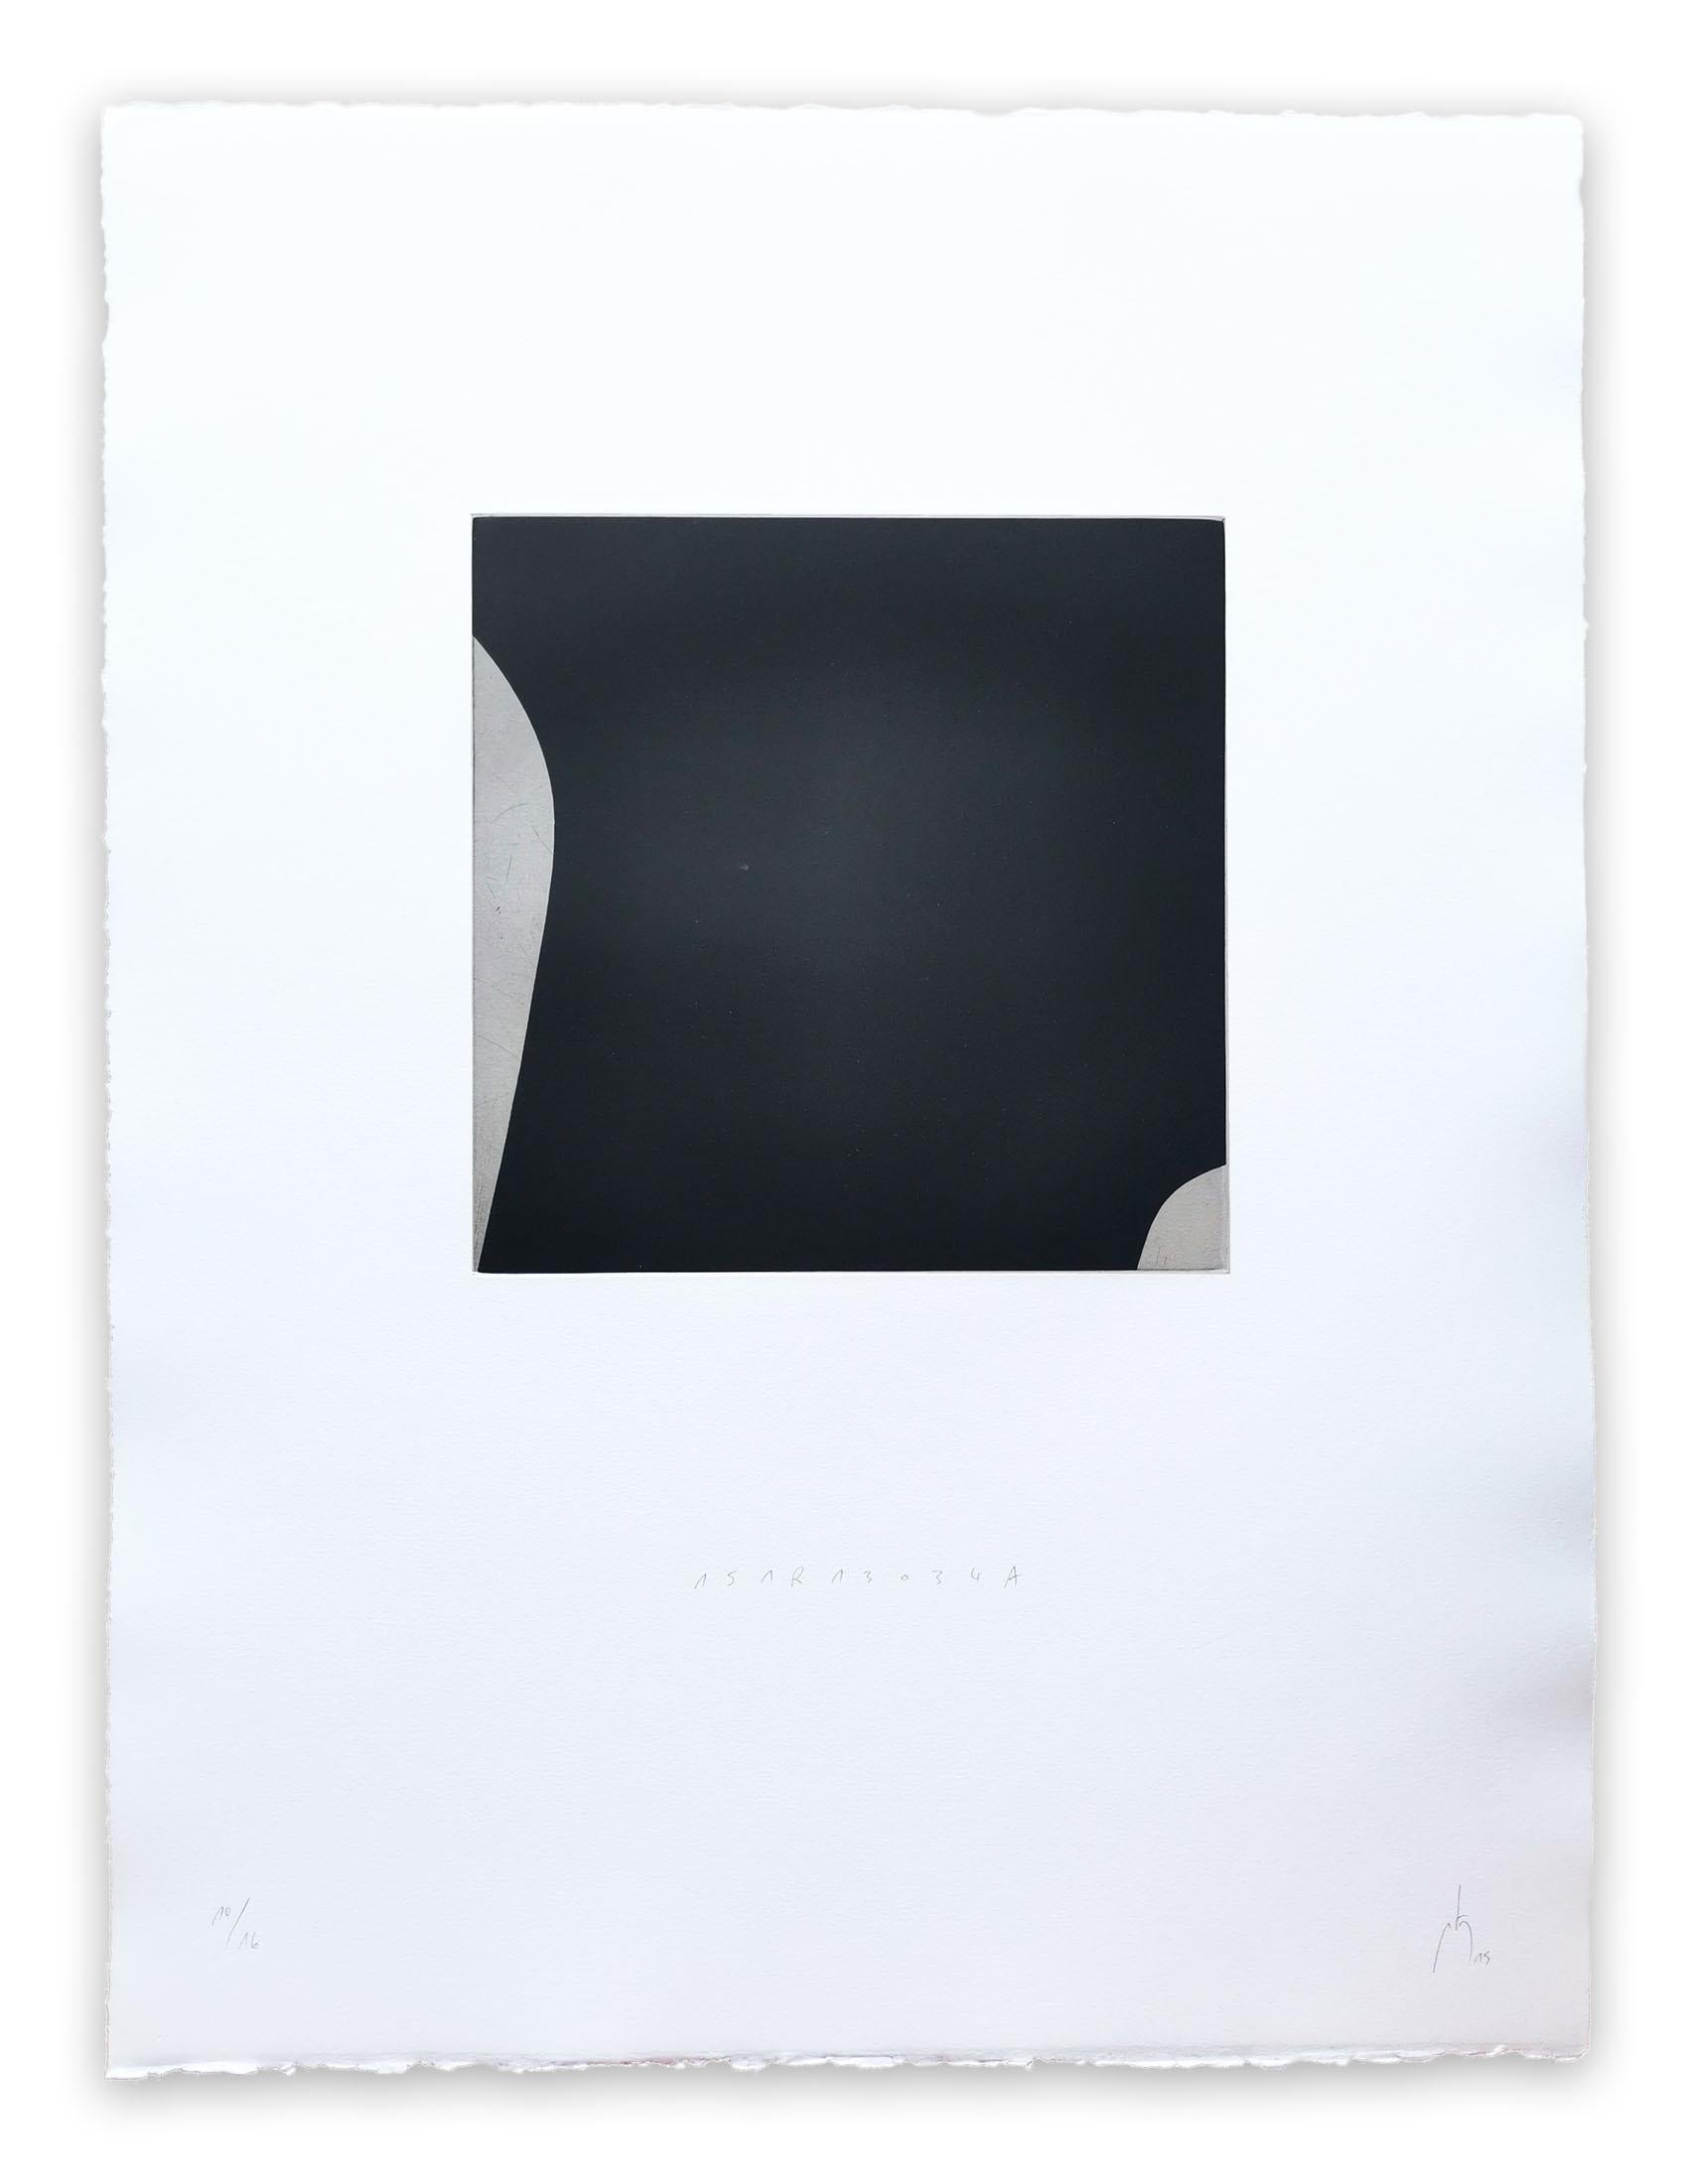 151R1034 (Abstrakter Druck)

Kupferstichdruck auf BFK Rives Papier 250g - ungerahmt.

Dieses Kunstwerk wird als Triptychon verkauft. Jeder Druck hat die Maße 65 x 50 cm/25,5 x 19,6 Zoll.

Ausgabe: 10/16

Seit 2010 hat Pierre Muckensturm die